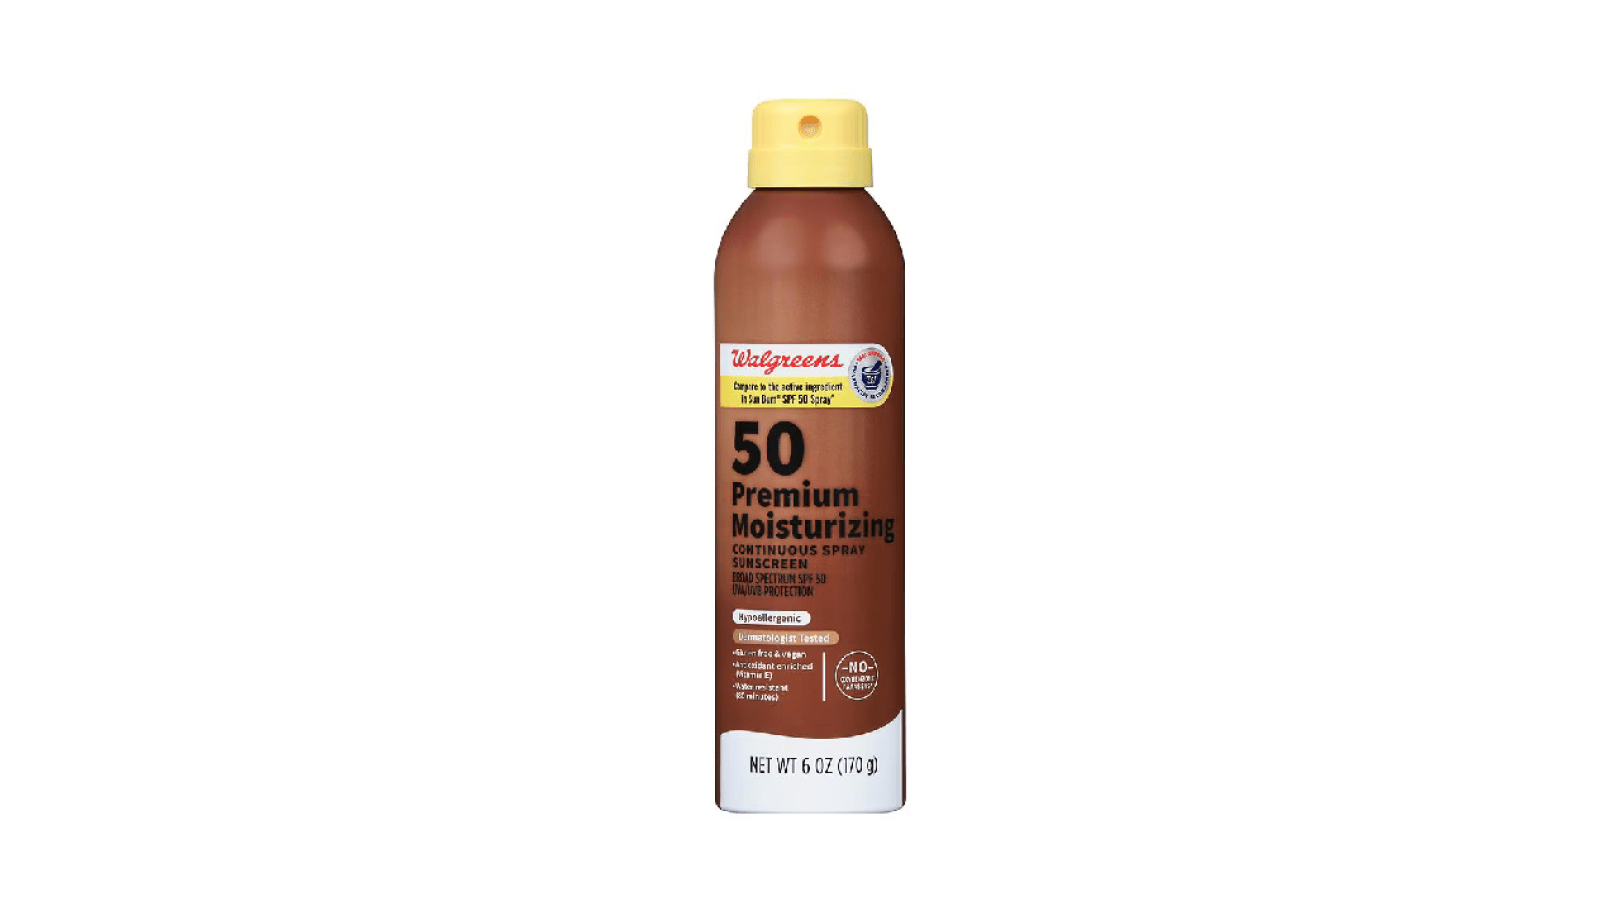 50 Premium Moisturizing continuous spray 